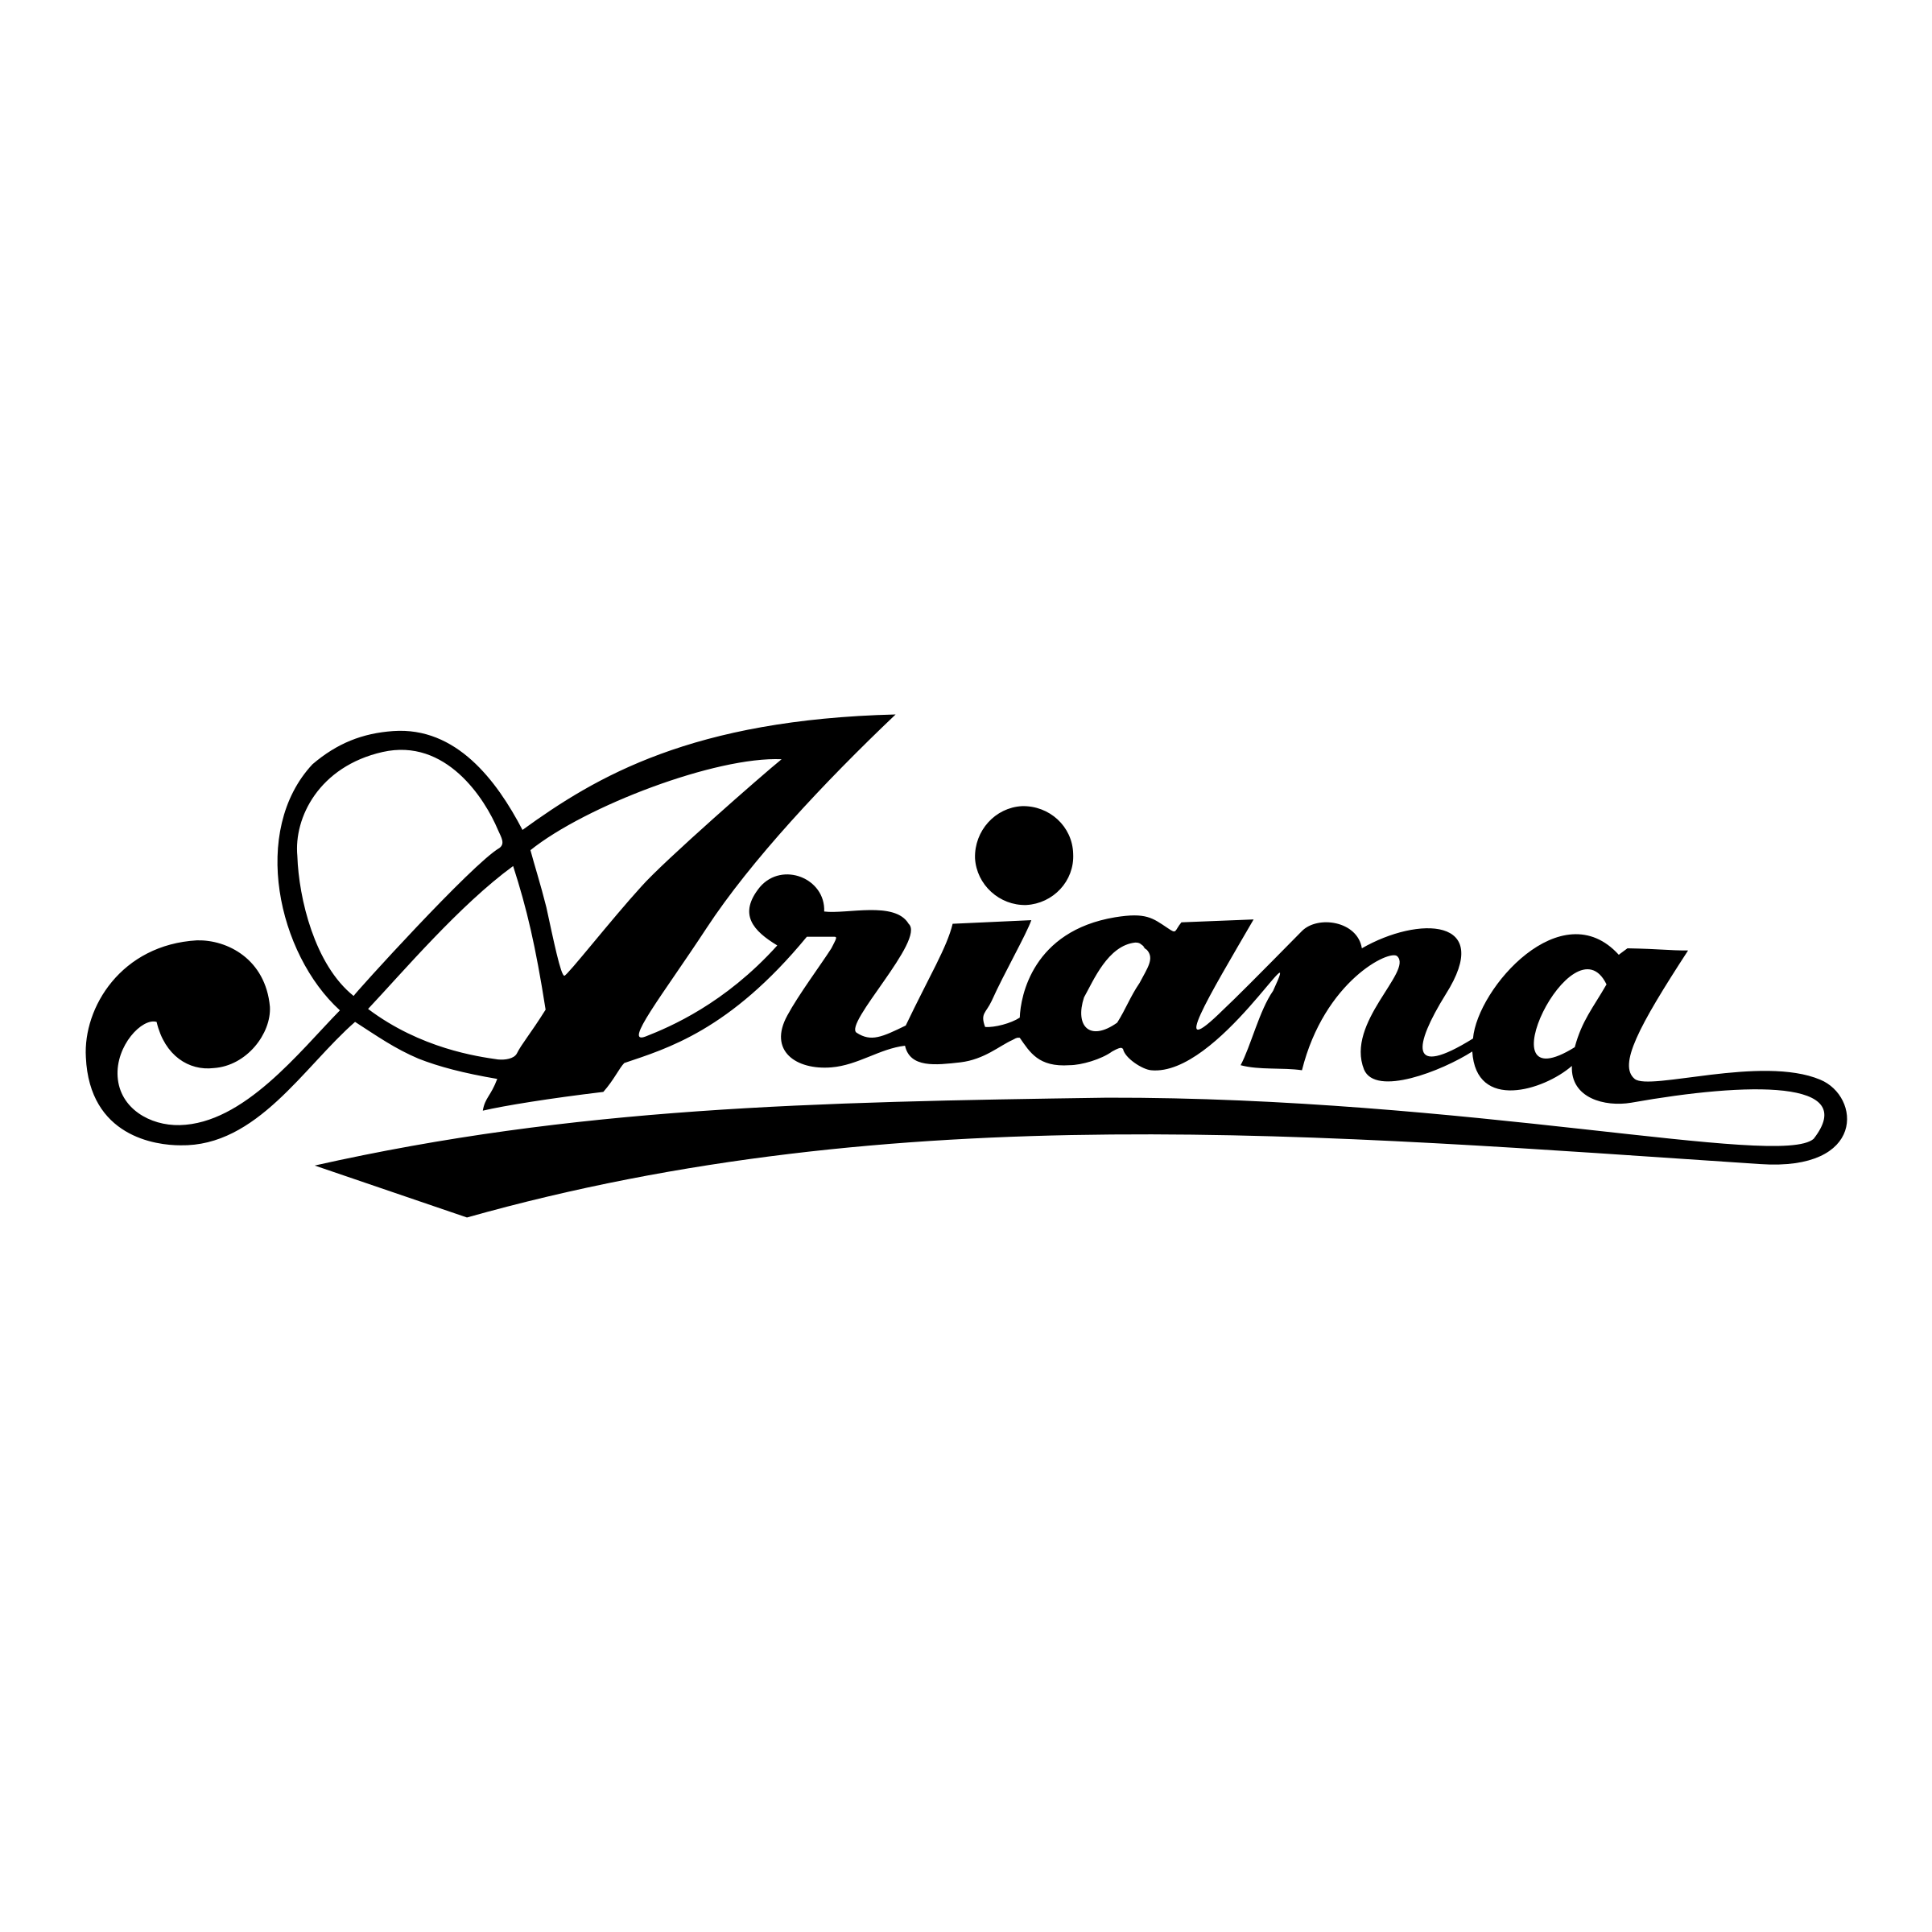 Ariana Logo - Ariana Logo PNG Transparent & SVG Vector - Freebie Supply